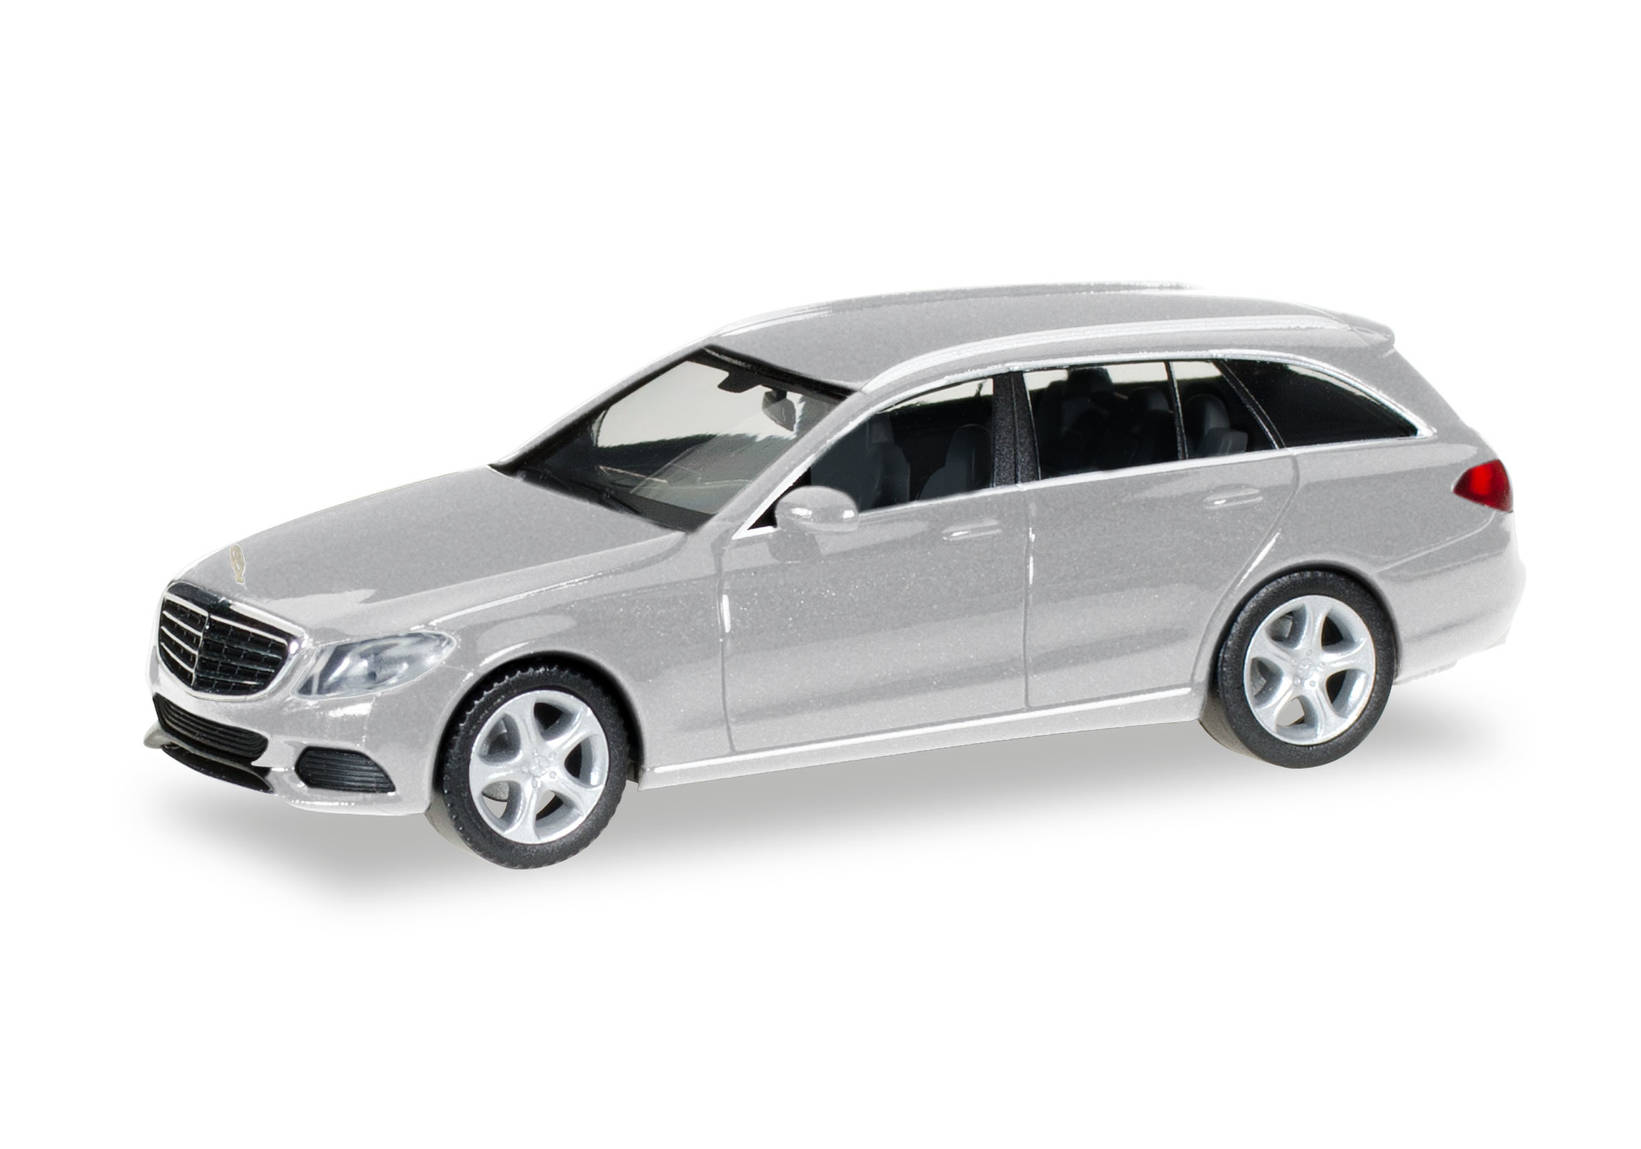 Mercedes-Benz C-Class T-Modell Elegance, silver metallic